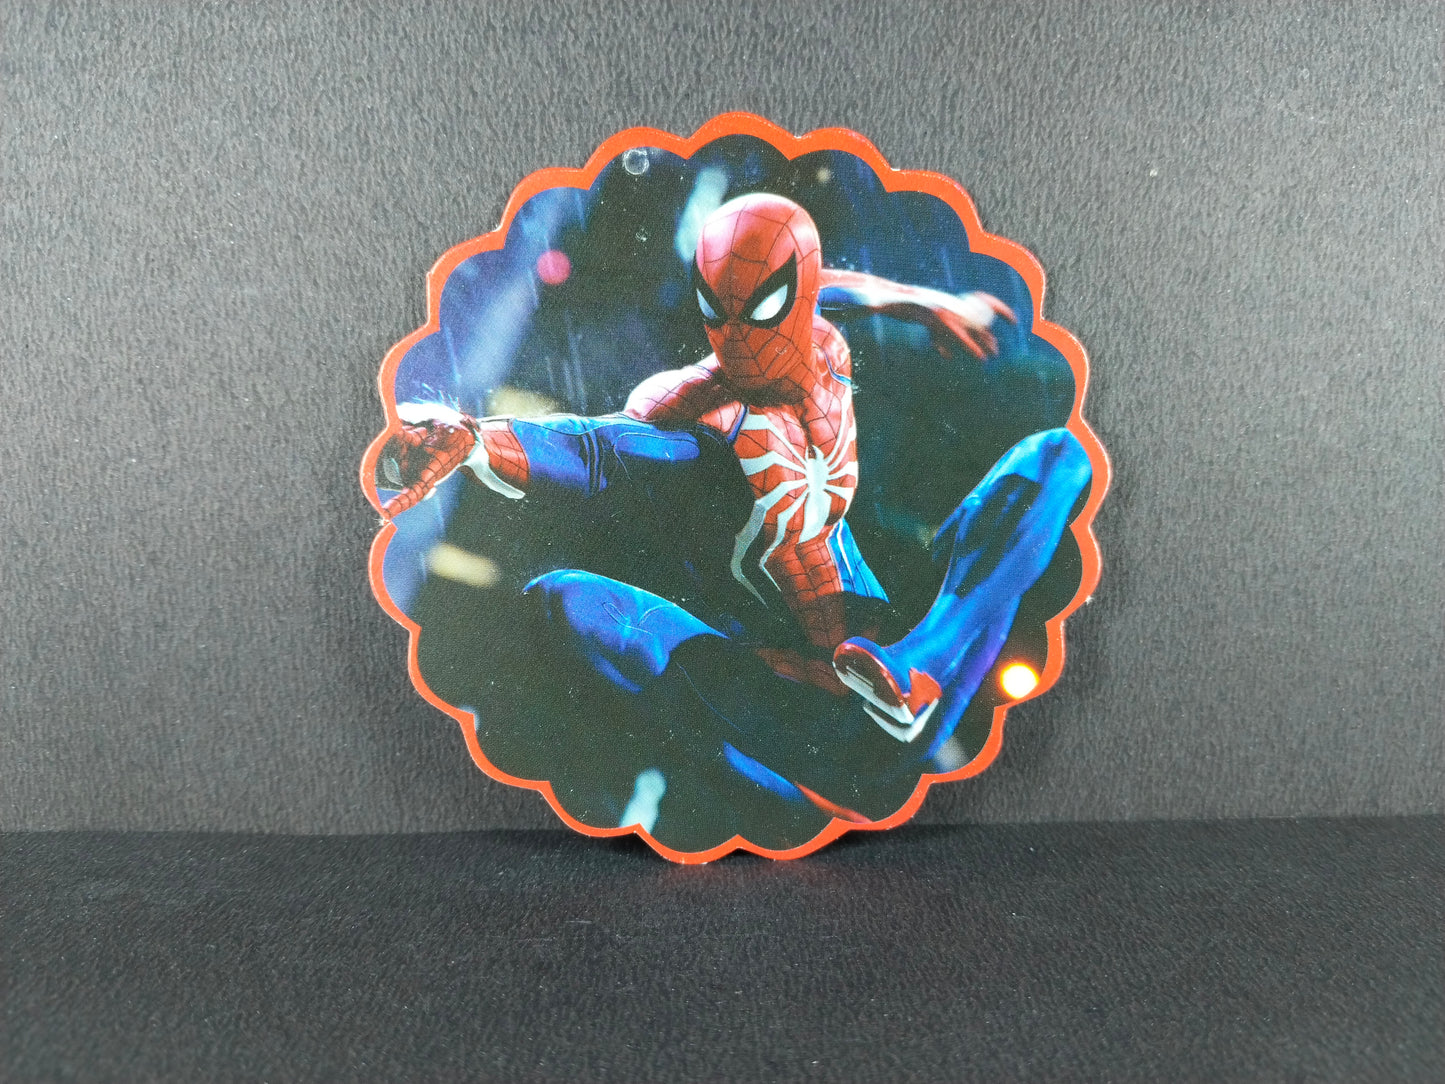 Spiderman Theme Swirls and Cutouts